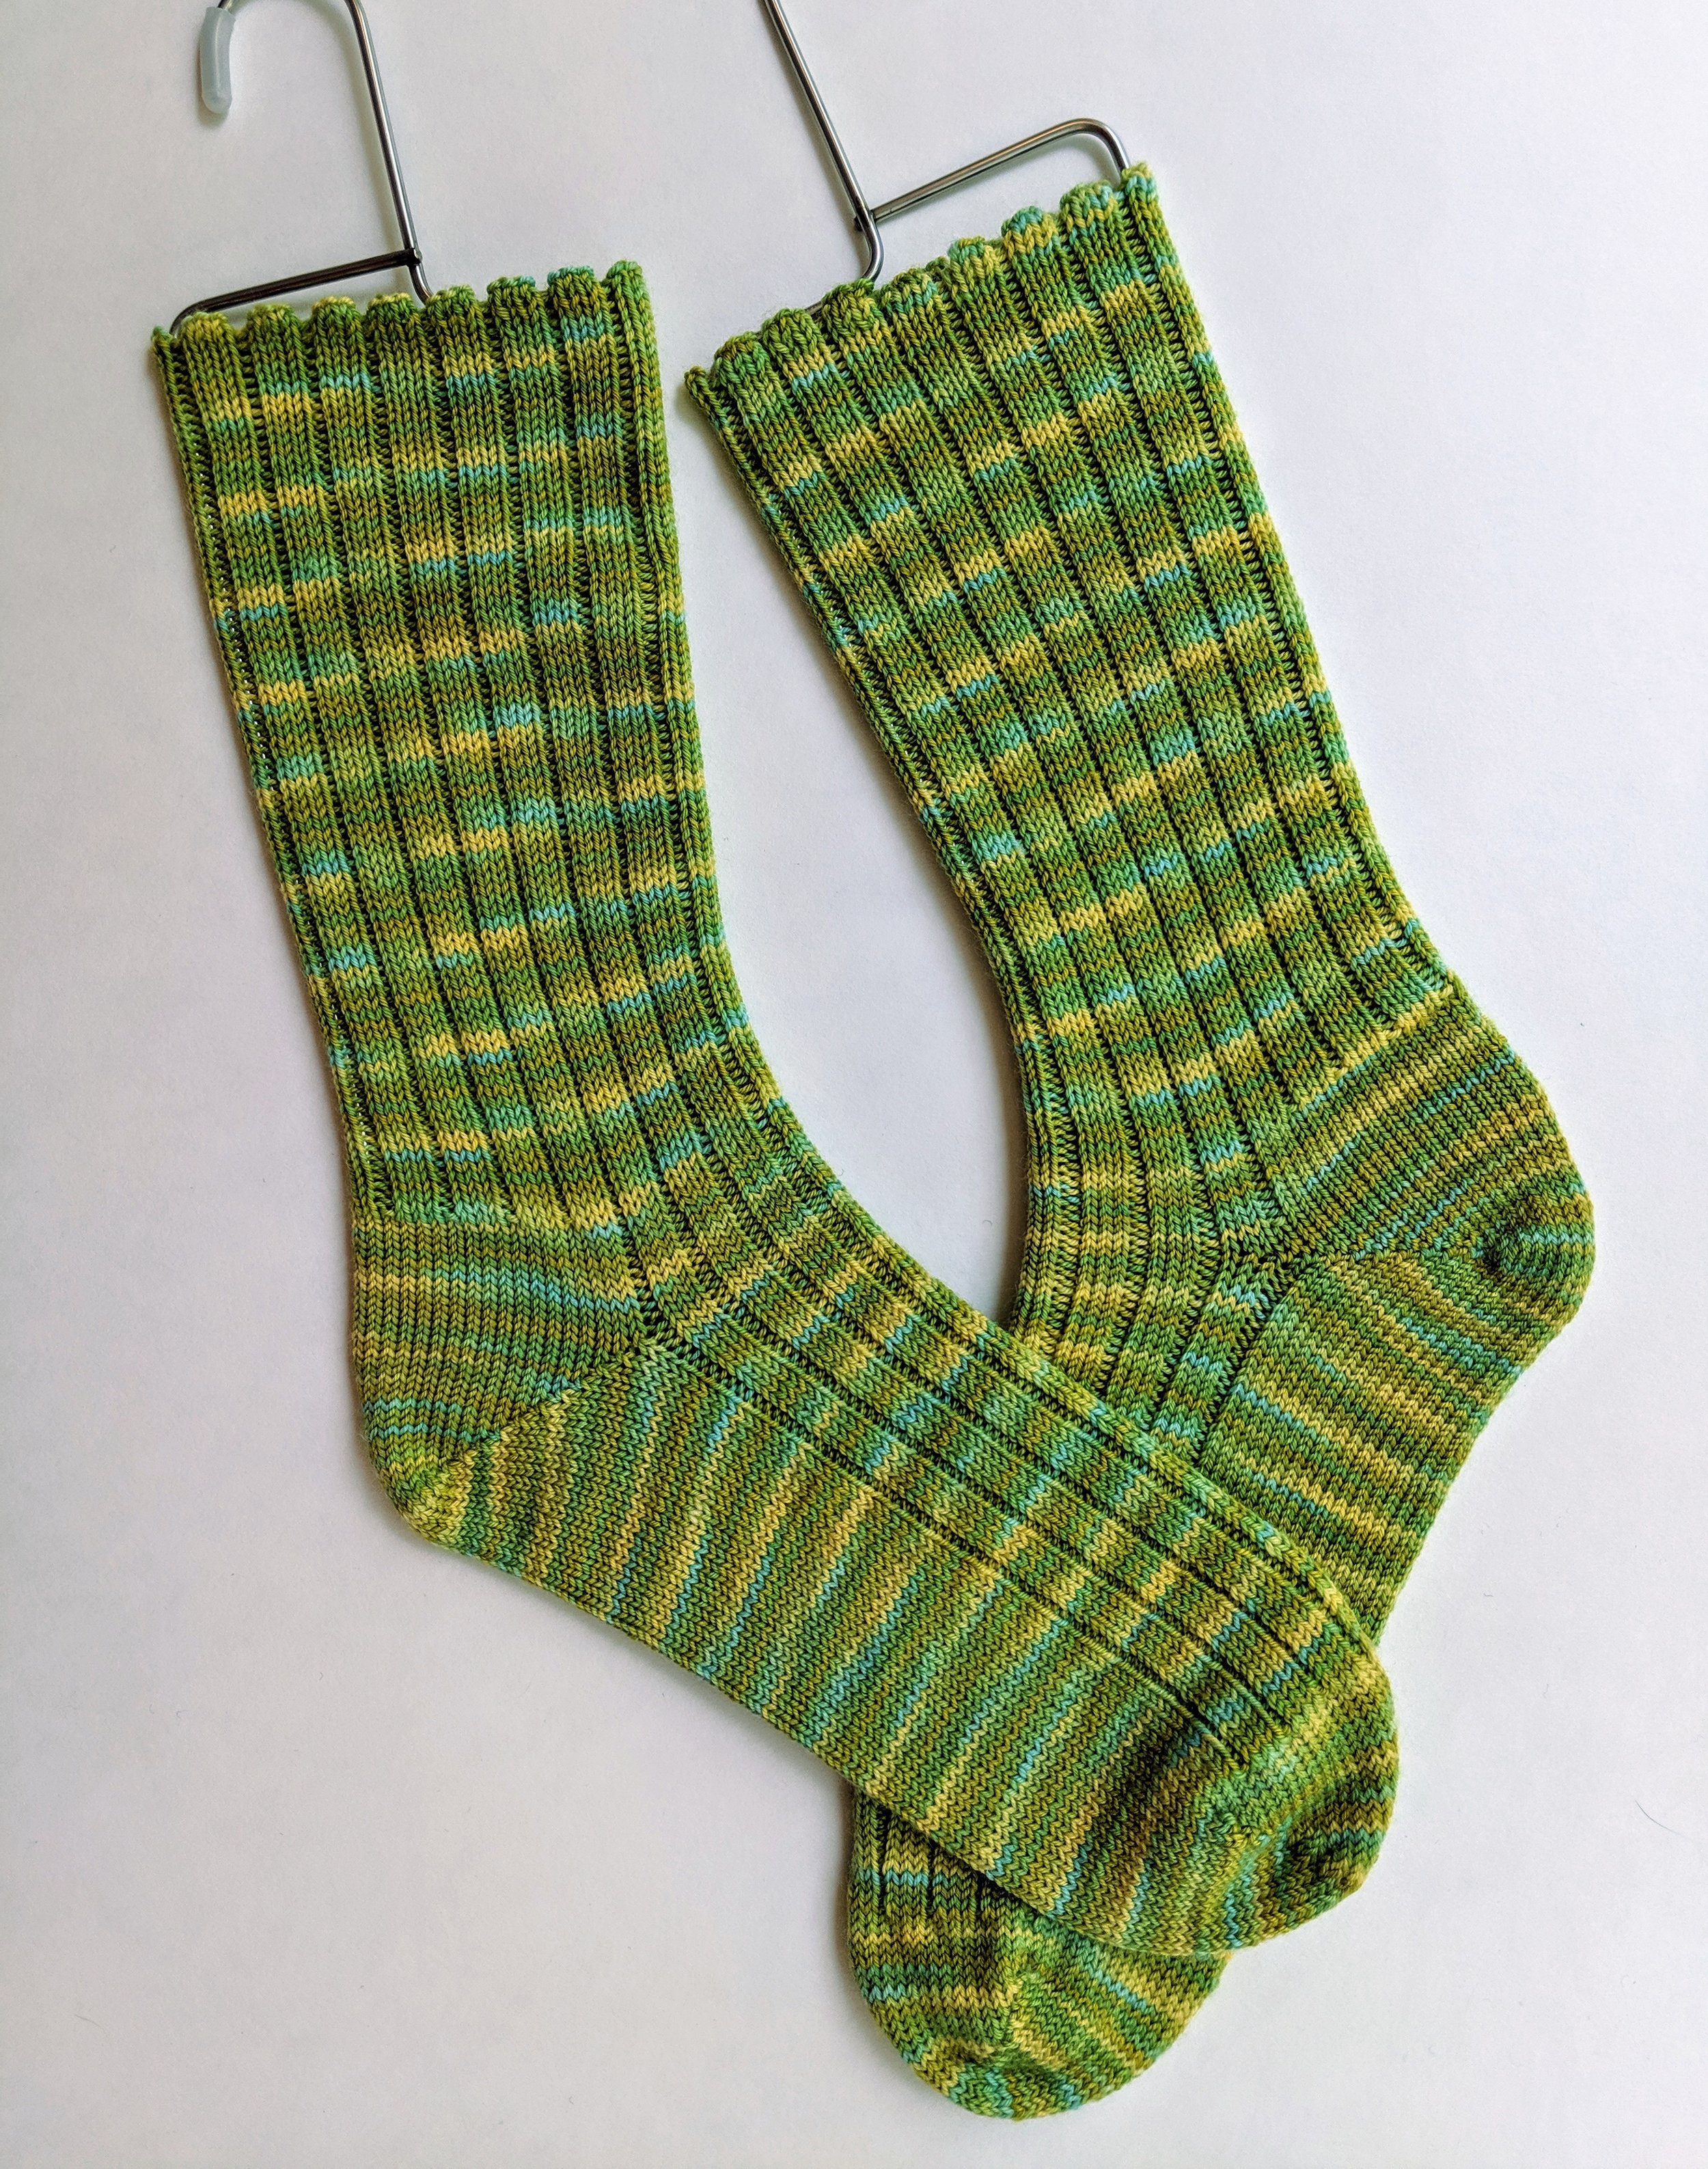 Shades of green ribbed socks; wool and nylon